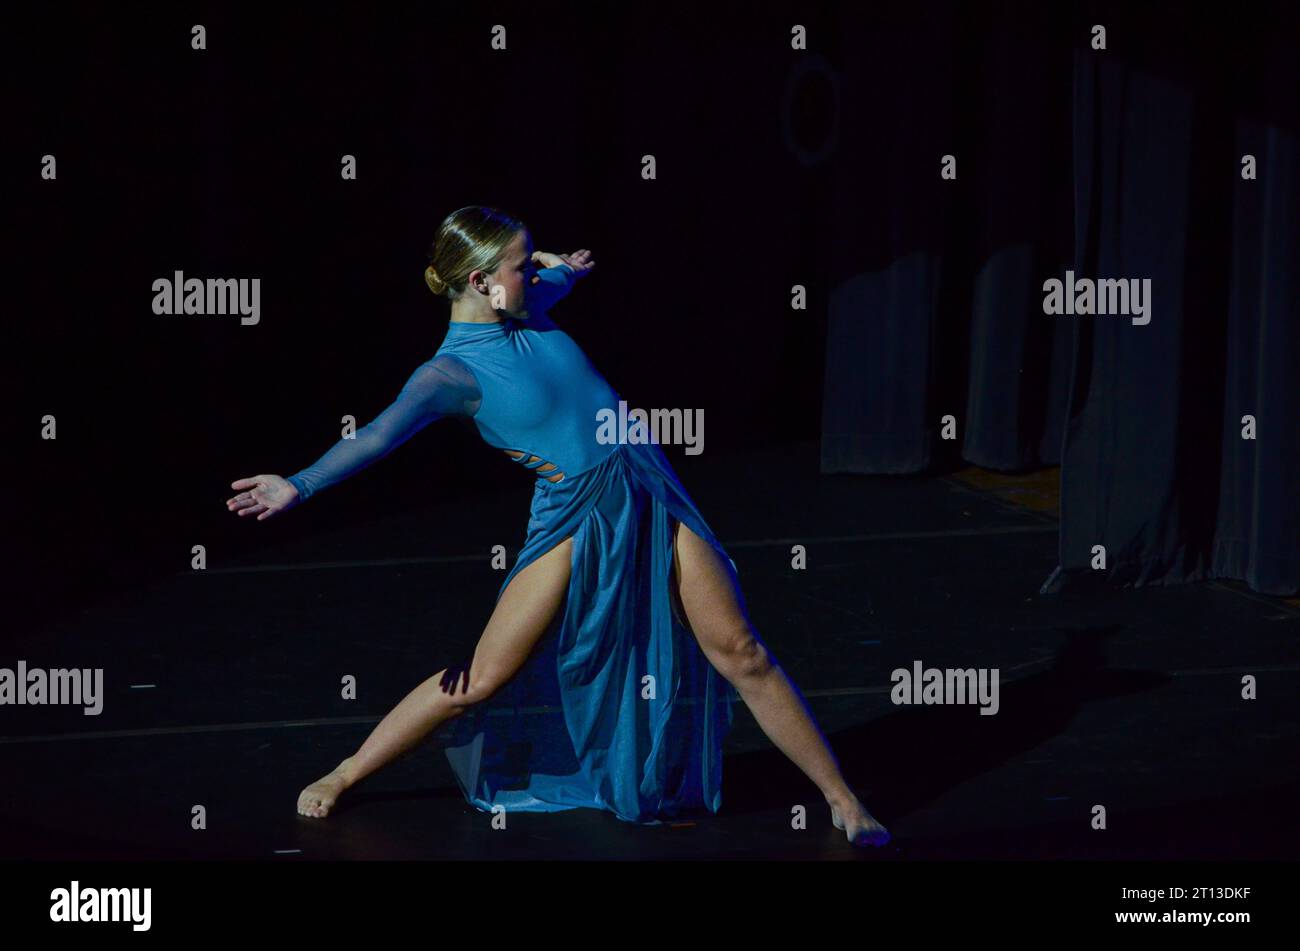 dancer striking a pose in the spotlight Stock Photo